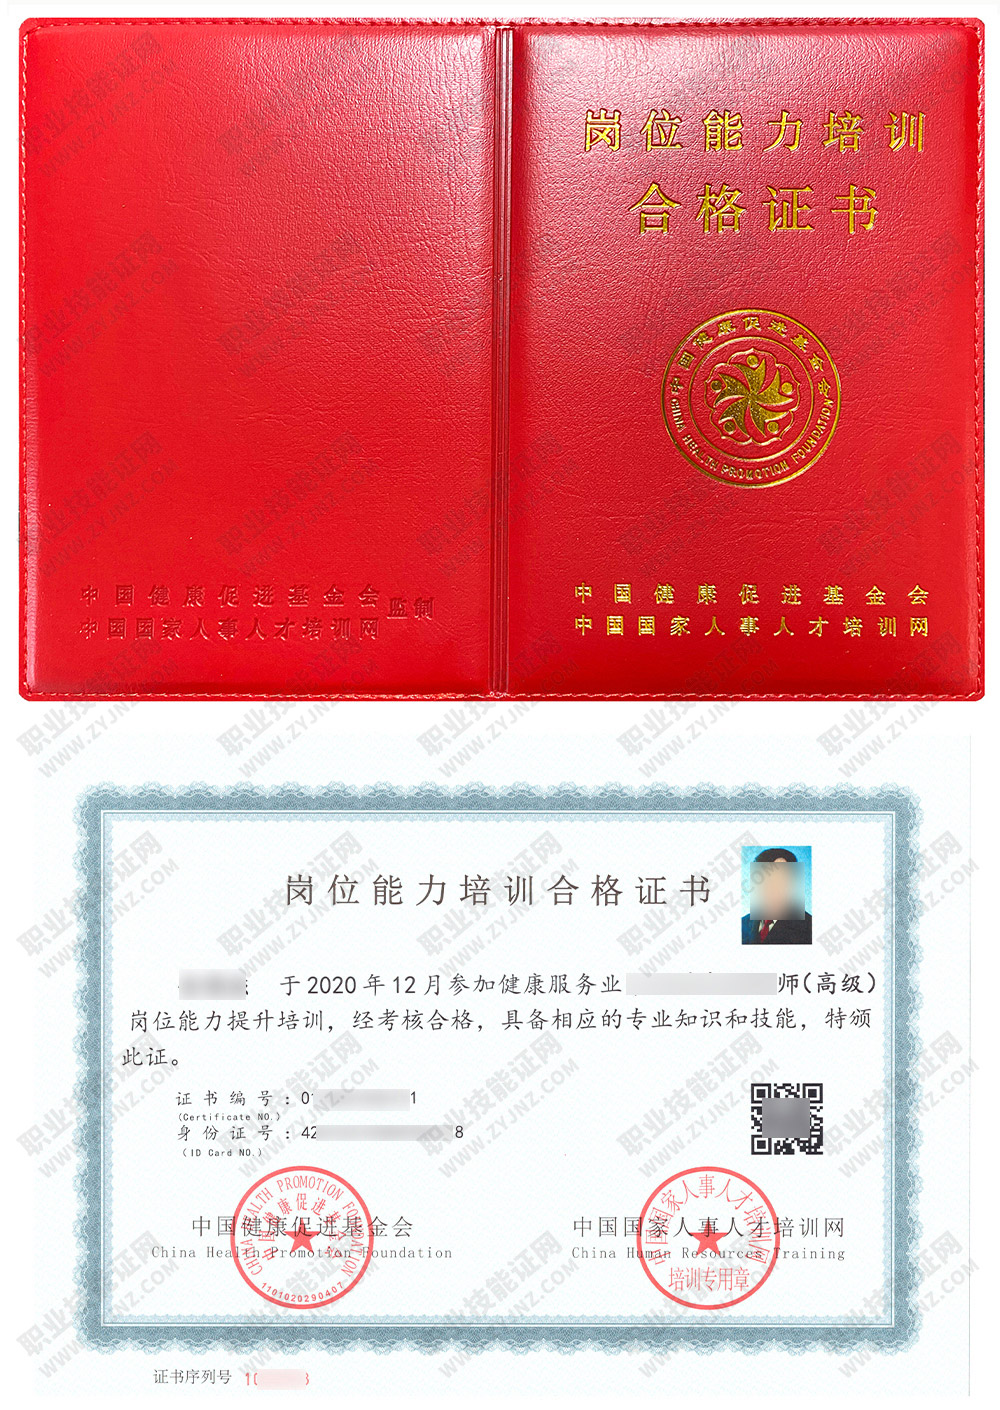 中国国家人事人才培训网 芳香疗法师 岗位能力培训合格证书